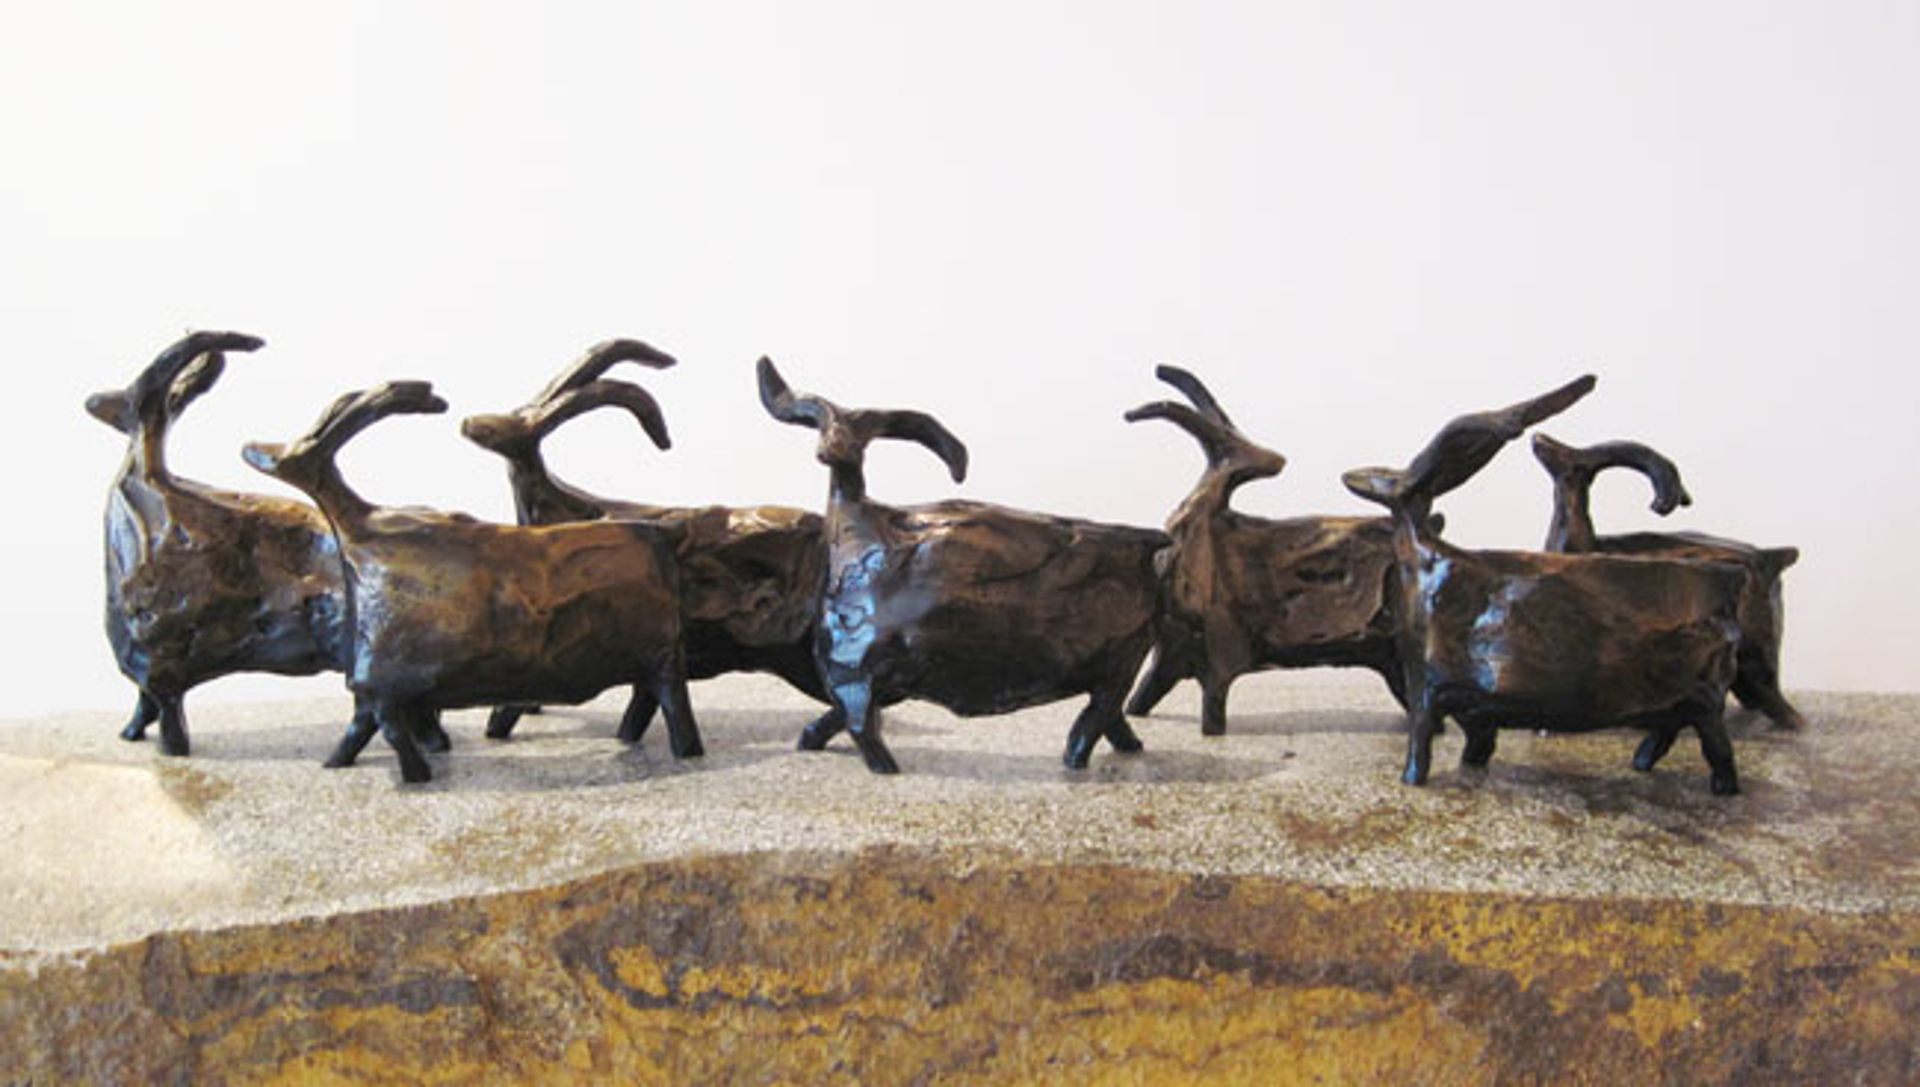 ROAMING SHEEP  - BRONZE - priced individually by Jill Shwaiko